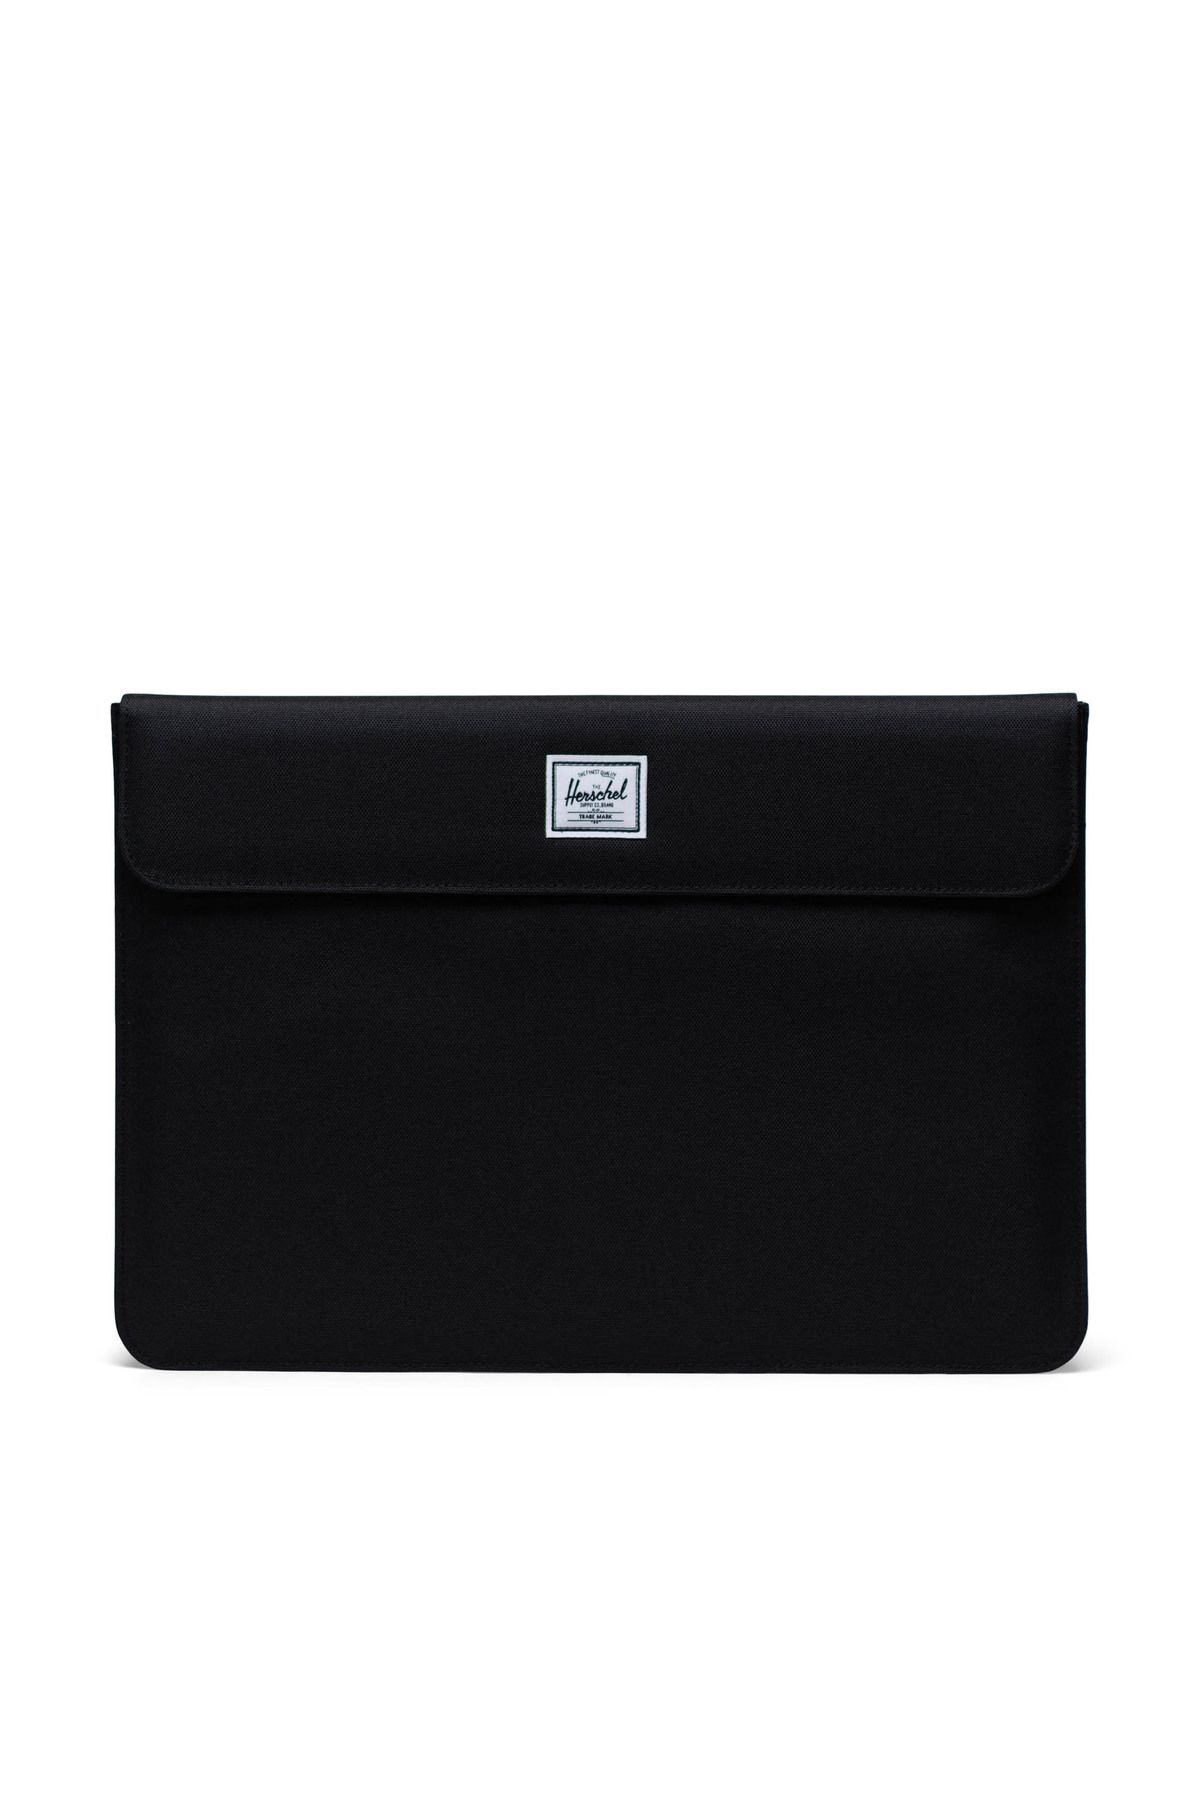 Herschel Spokane Laptop Macbook Tablet Kılıfı Sleeve 15-16 İnç Uyumlu